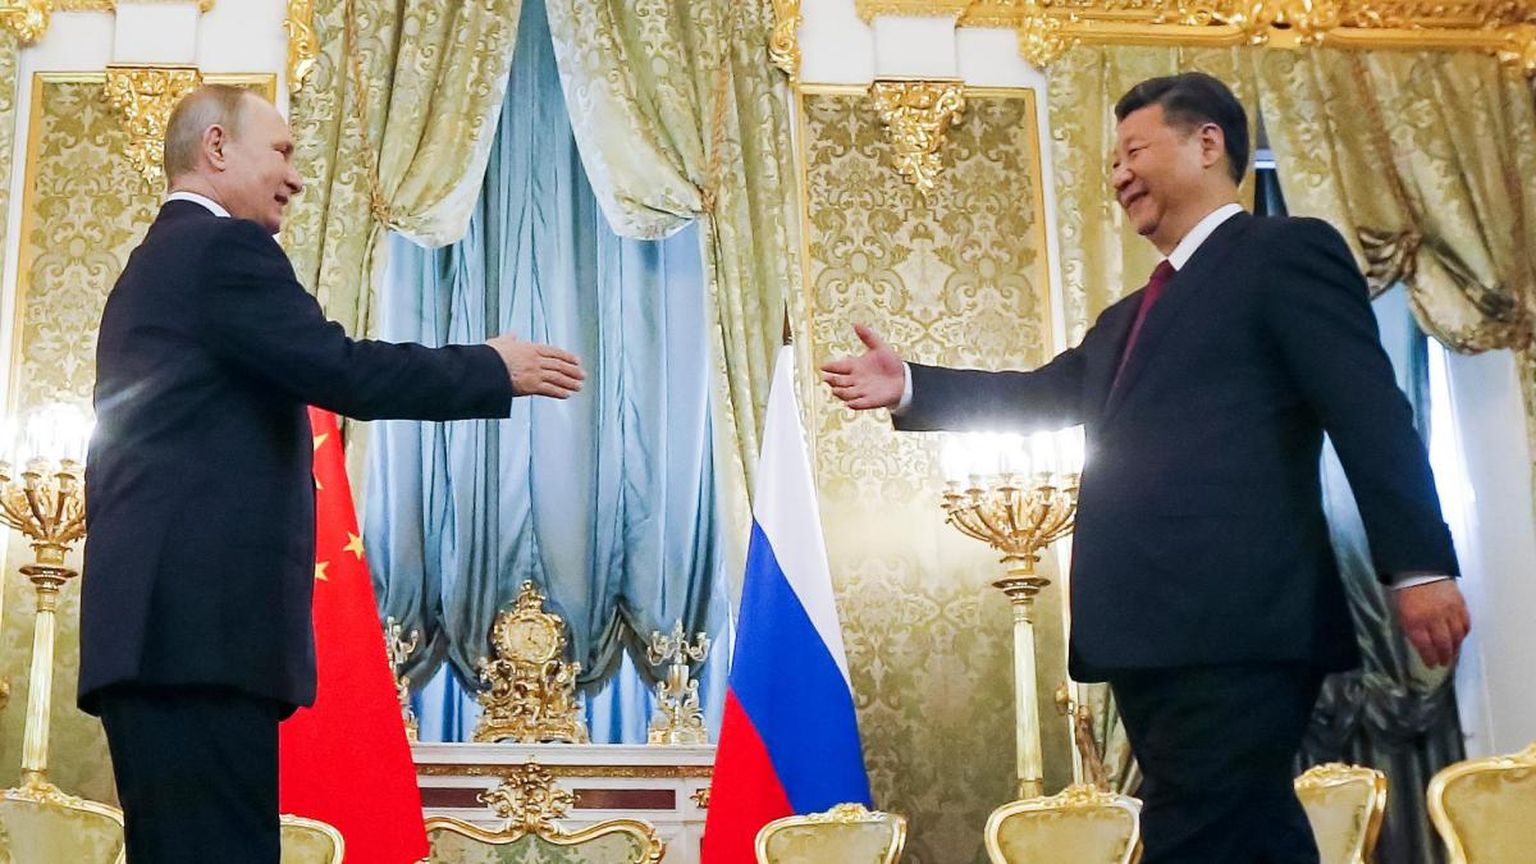 AUTOKRAATIA TELG? Hiina liider Xi Jinping on praegu maailmaareenil Vladimir Putini üks tähtsamaid toetajaid. Seepärast on sageli väidetud, et need riigipead moodustavad kaasaja maailmas nn autokraatia telje.